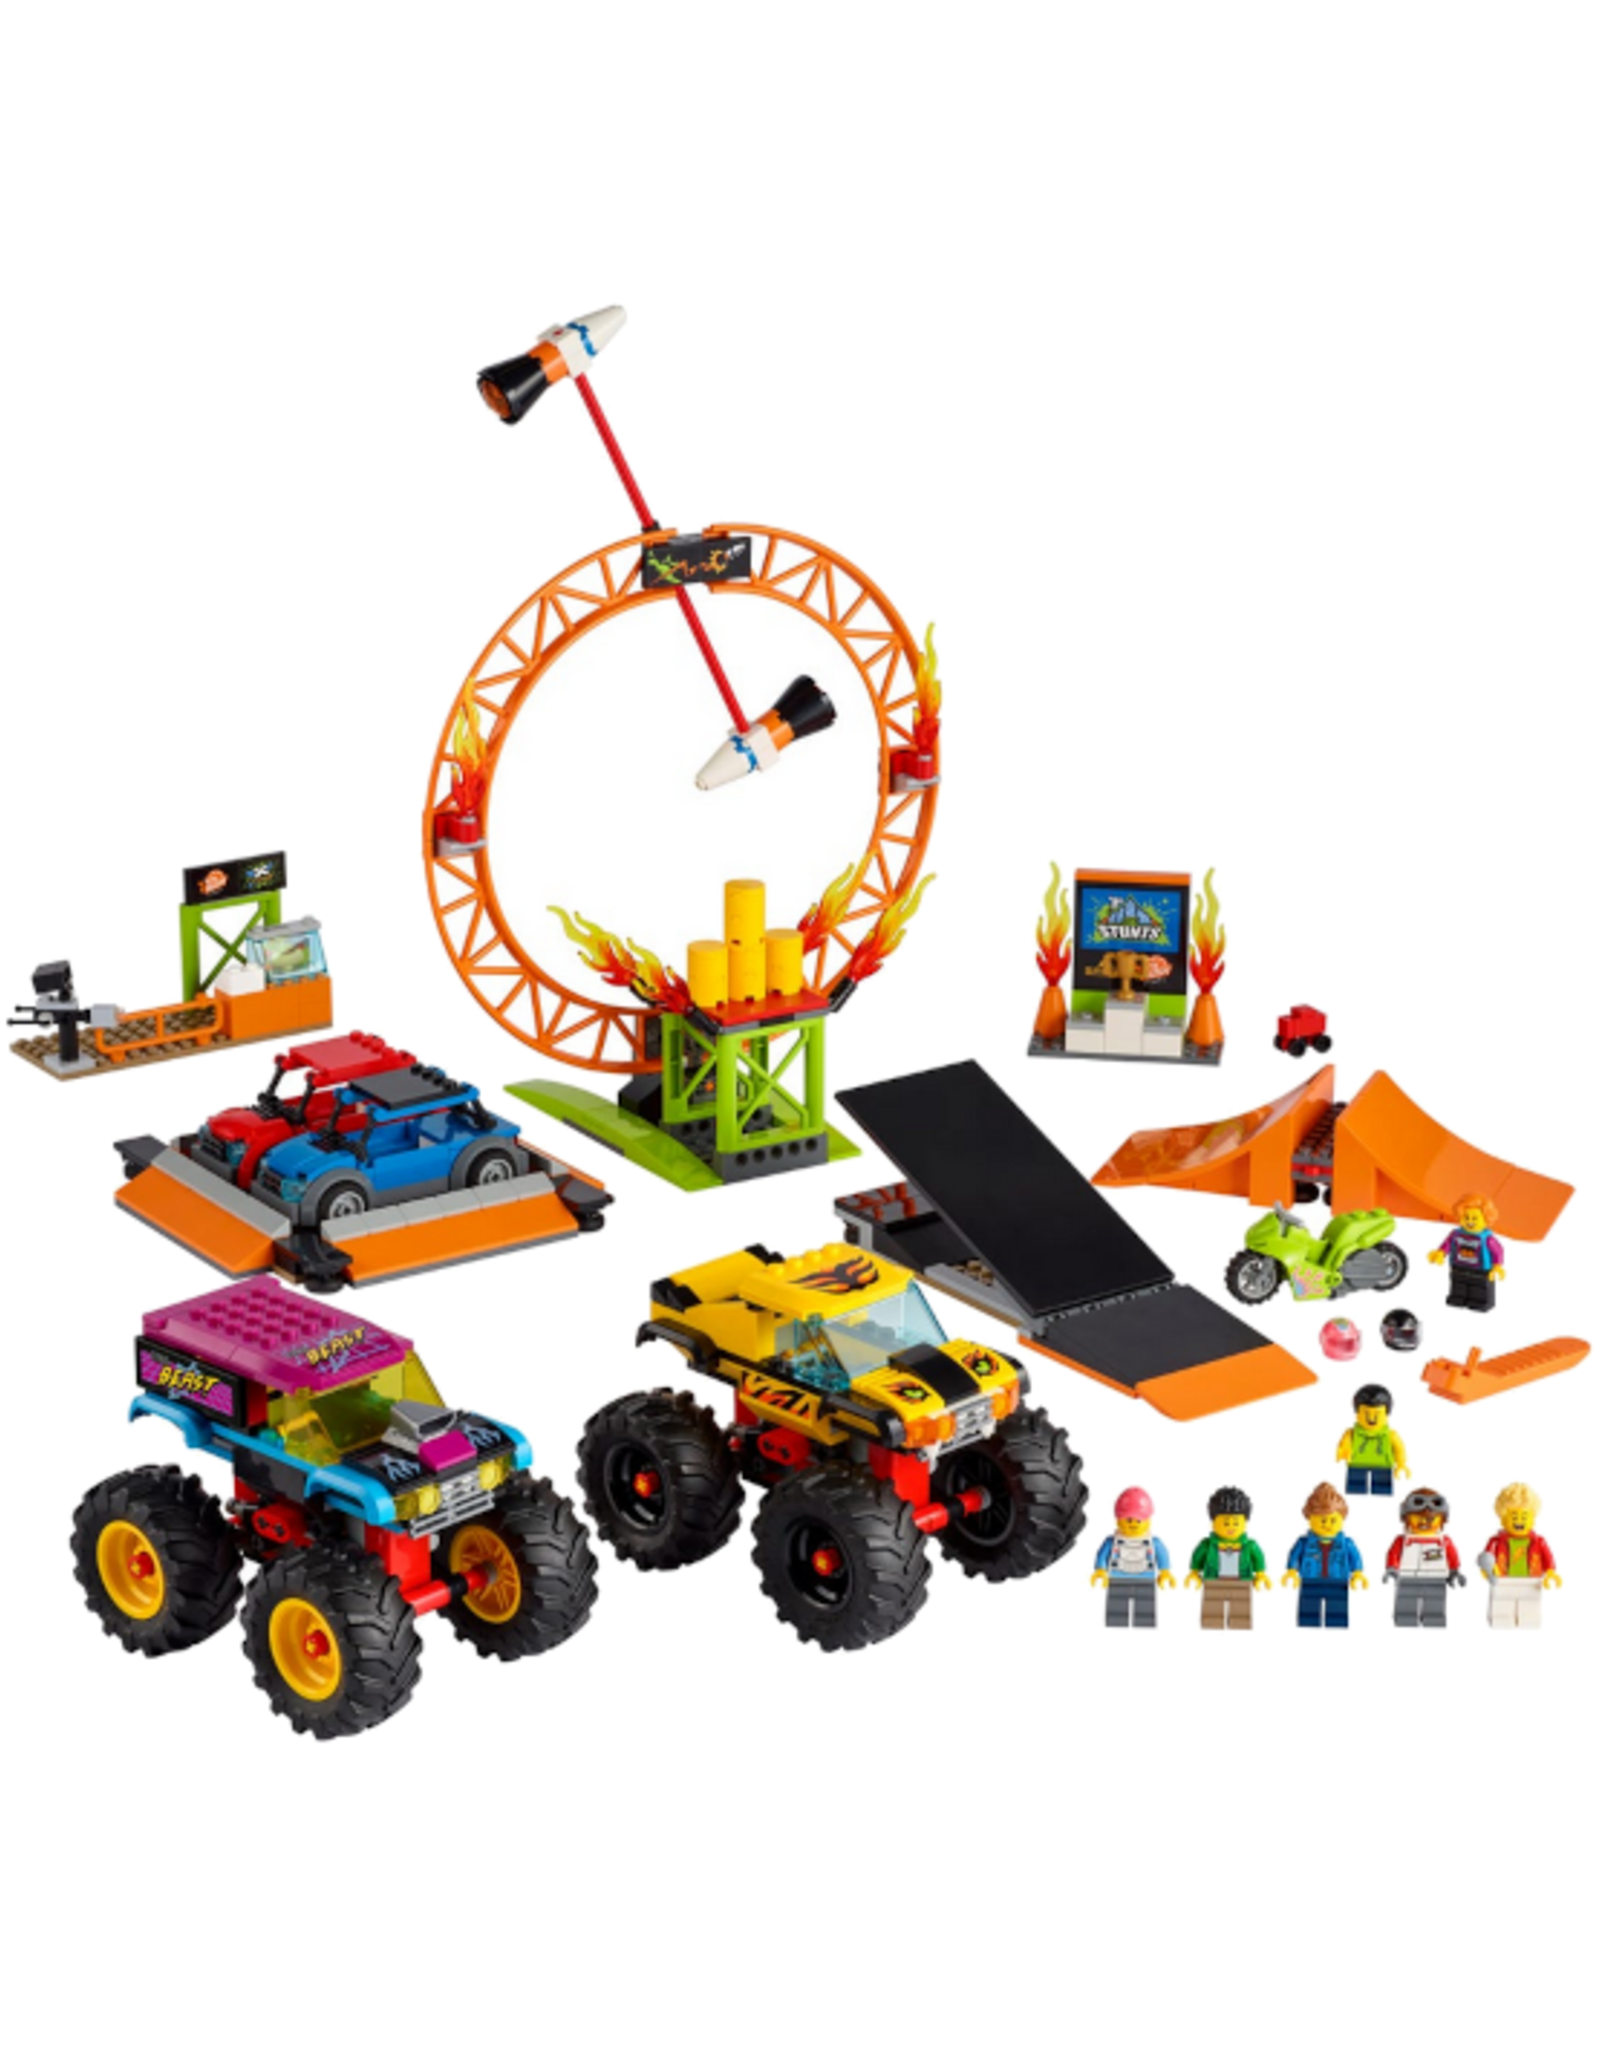 Lego Lego - City - 60295 - Stunt Show Arena